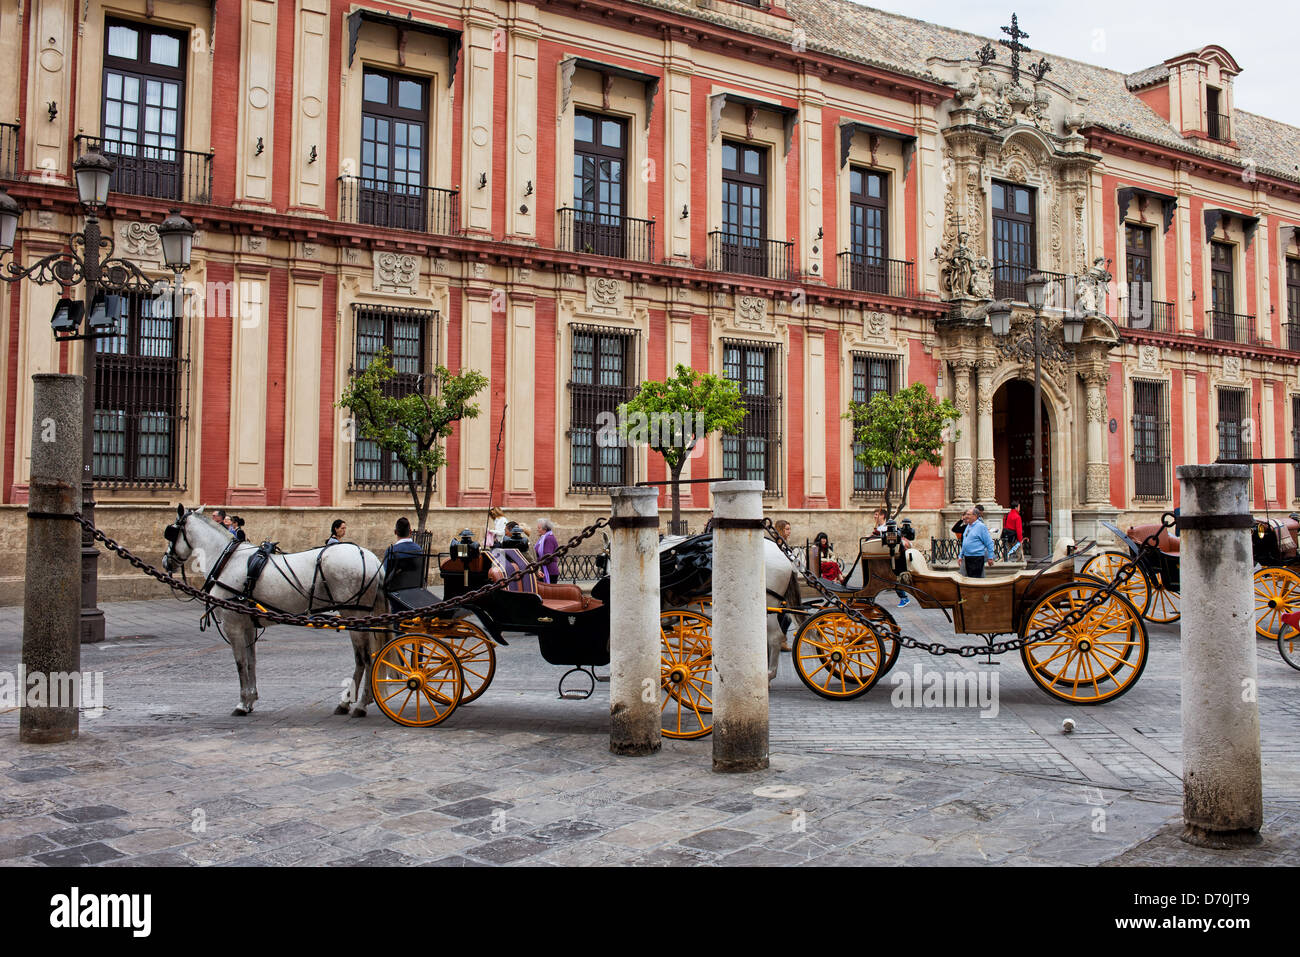 Ciudad Vieja de Sevilla pintoresca arquitectura histórica (zona próxima a la Catedral) y carruajes de caballos, Andalucía, España. Foto de stock